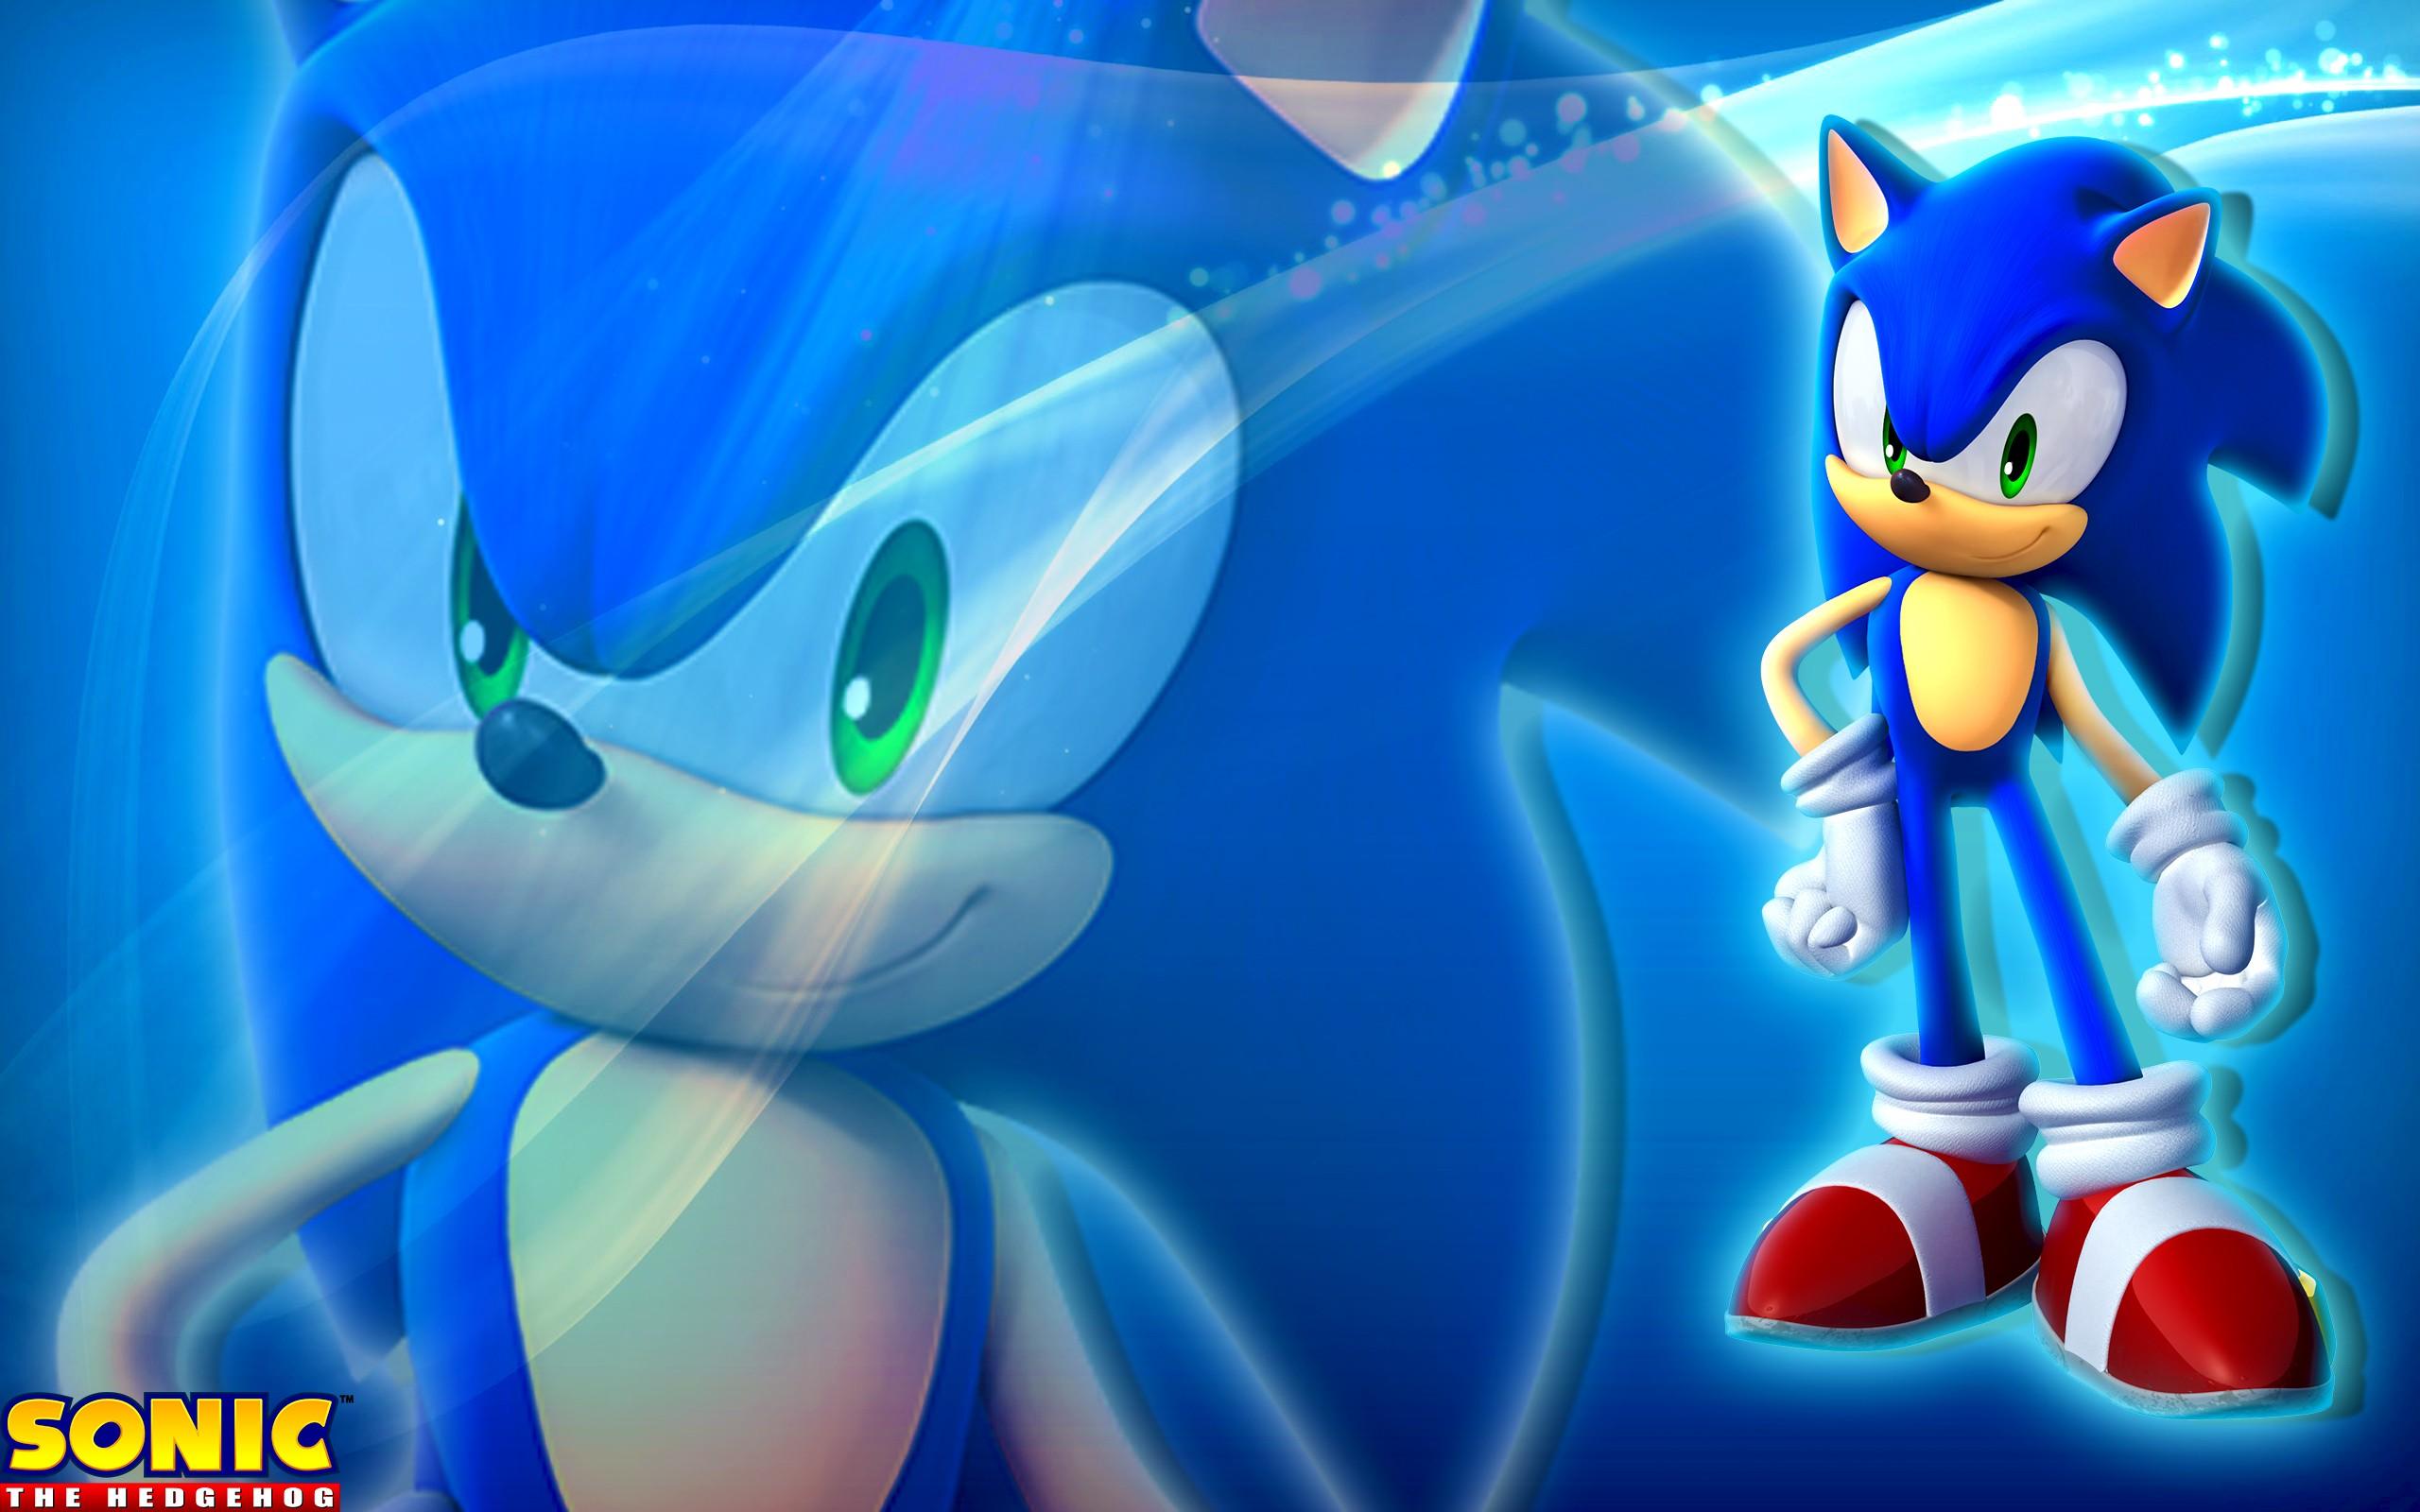 Free download Sonic The Hedgehog Computer Wallpaper Desktop